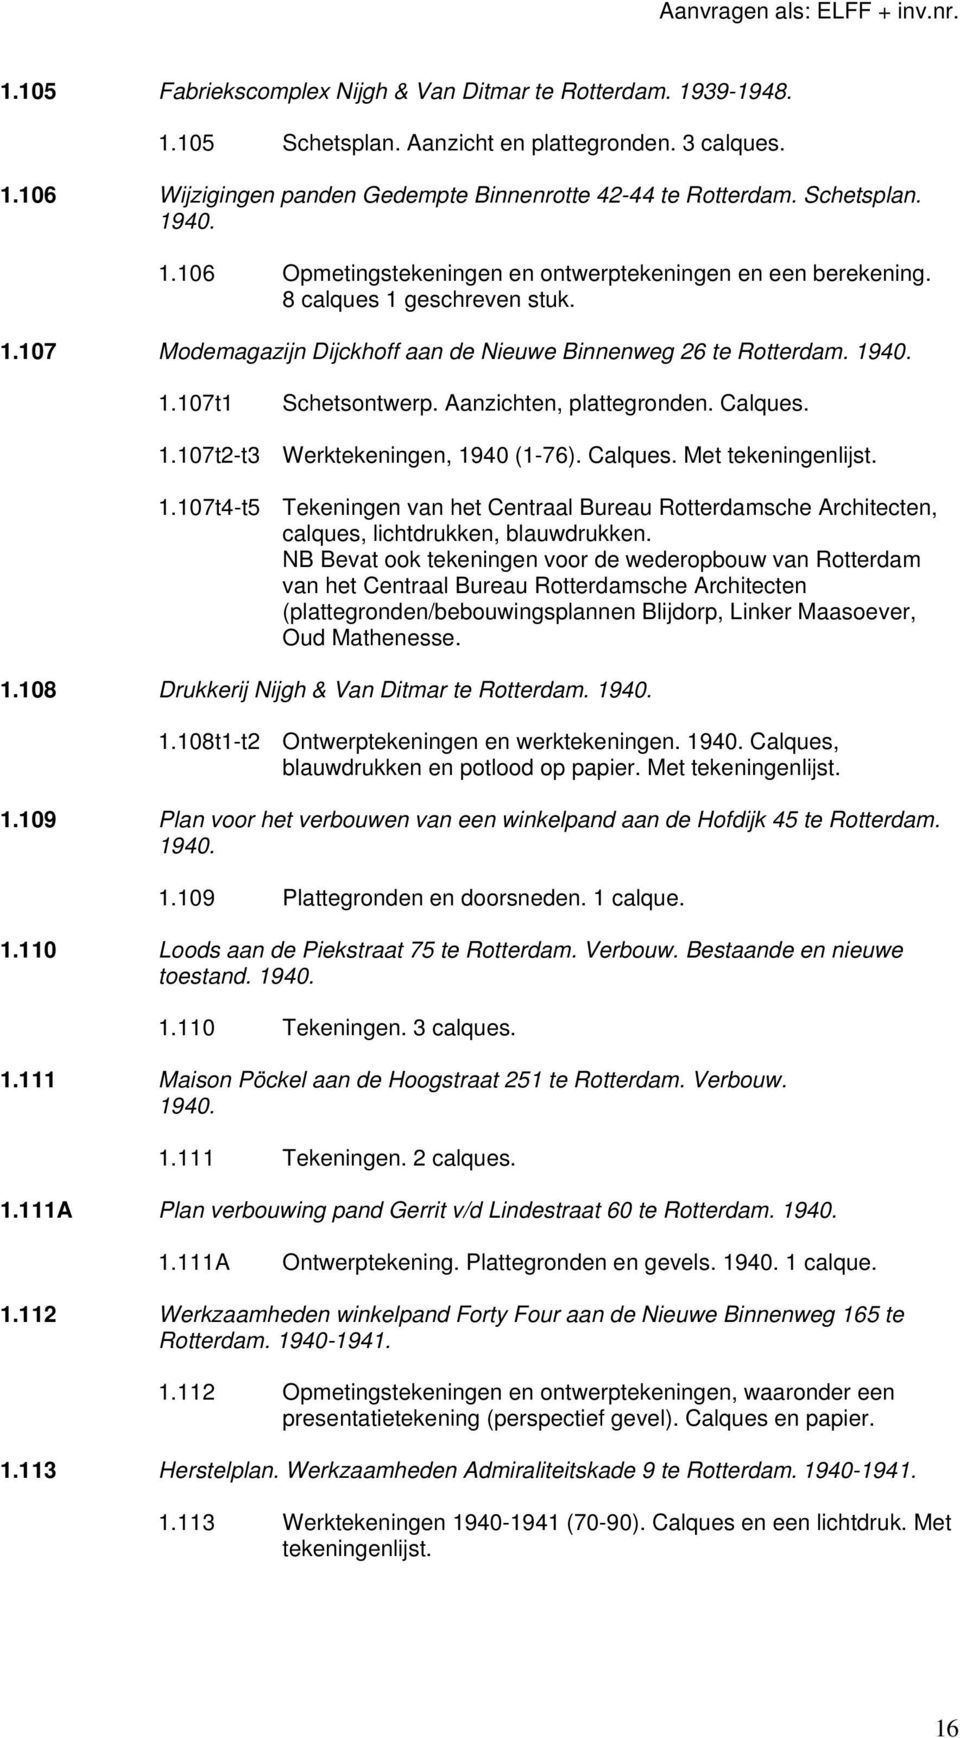 Aanzichten, plattegronden. Calques. 1.107t2-t3 Werktekeningen, 1940 (1-76). Calques. 1.107t4-t5 Tekeningen van het Centraal Bureau Rotterdamsche Architecten, calques, lichtdrukken, blauwdrukken.